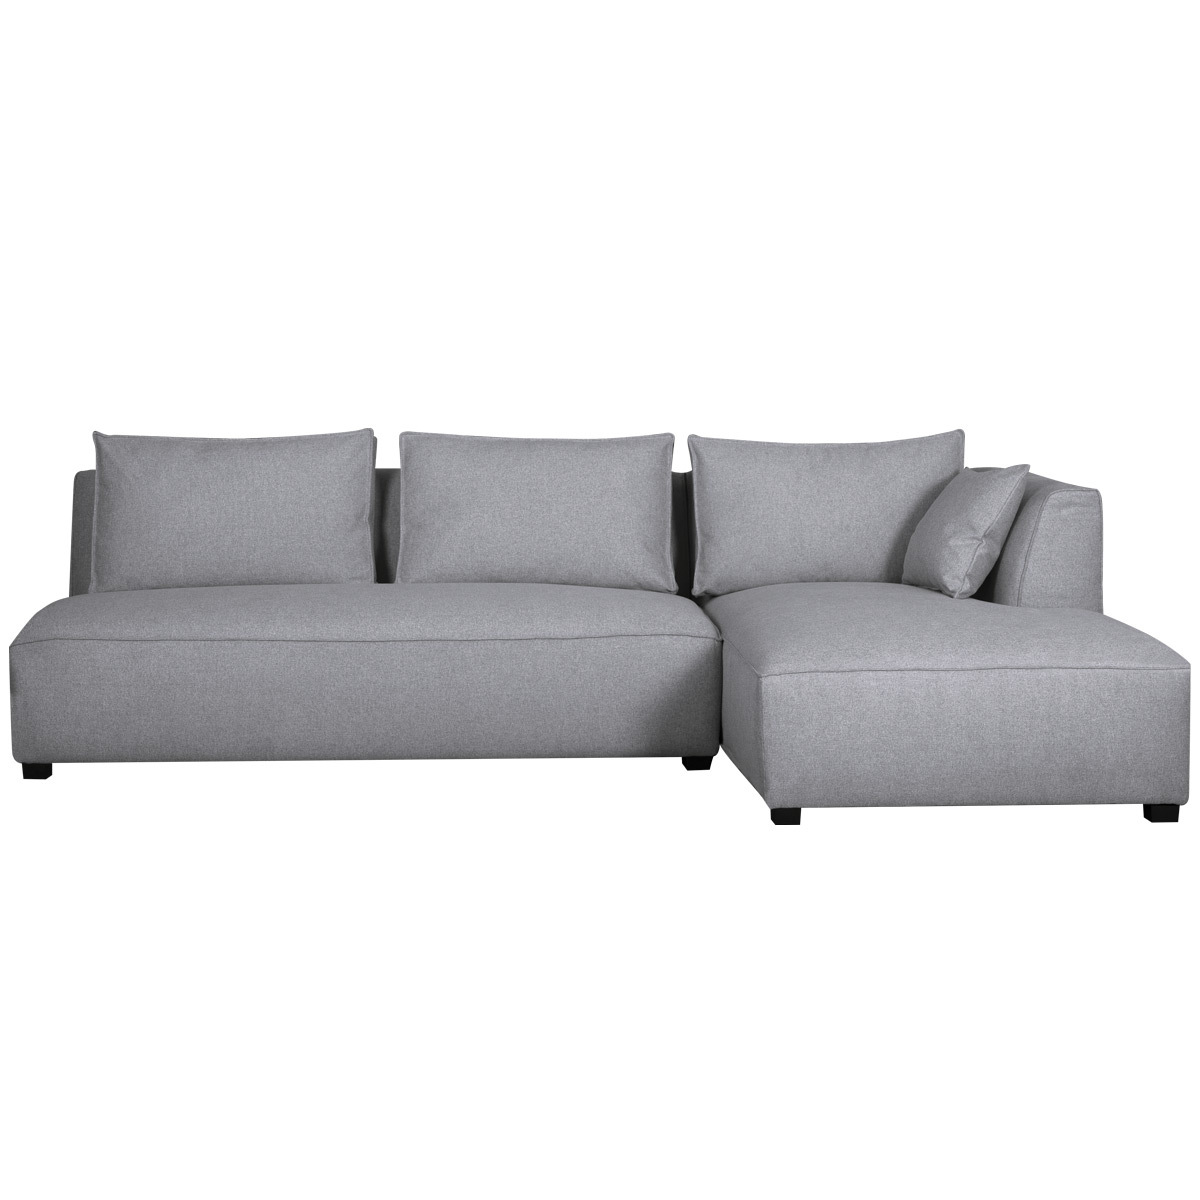 Canapé d'angle droit moderne modulable avec chauffeuse double gris clair PLURIEL vue1